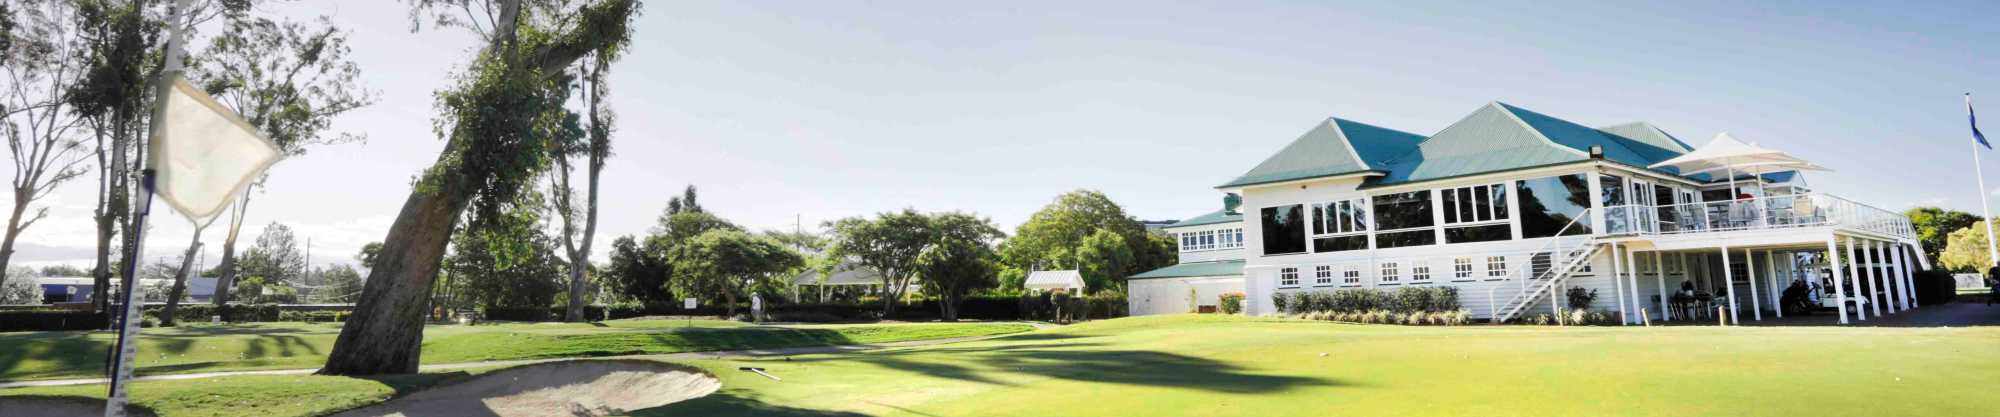 Brisbane Golf Club 18th green